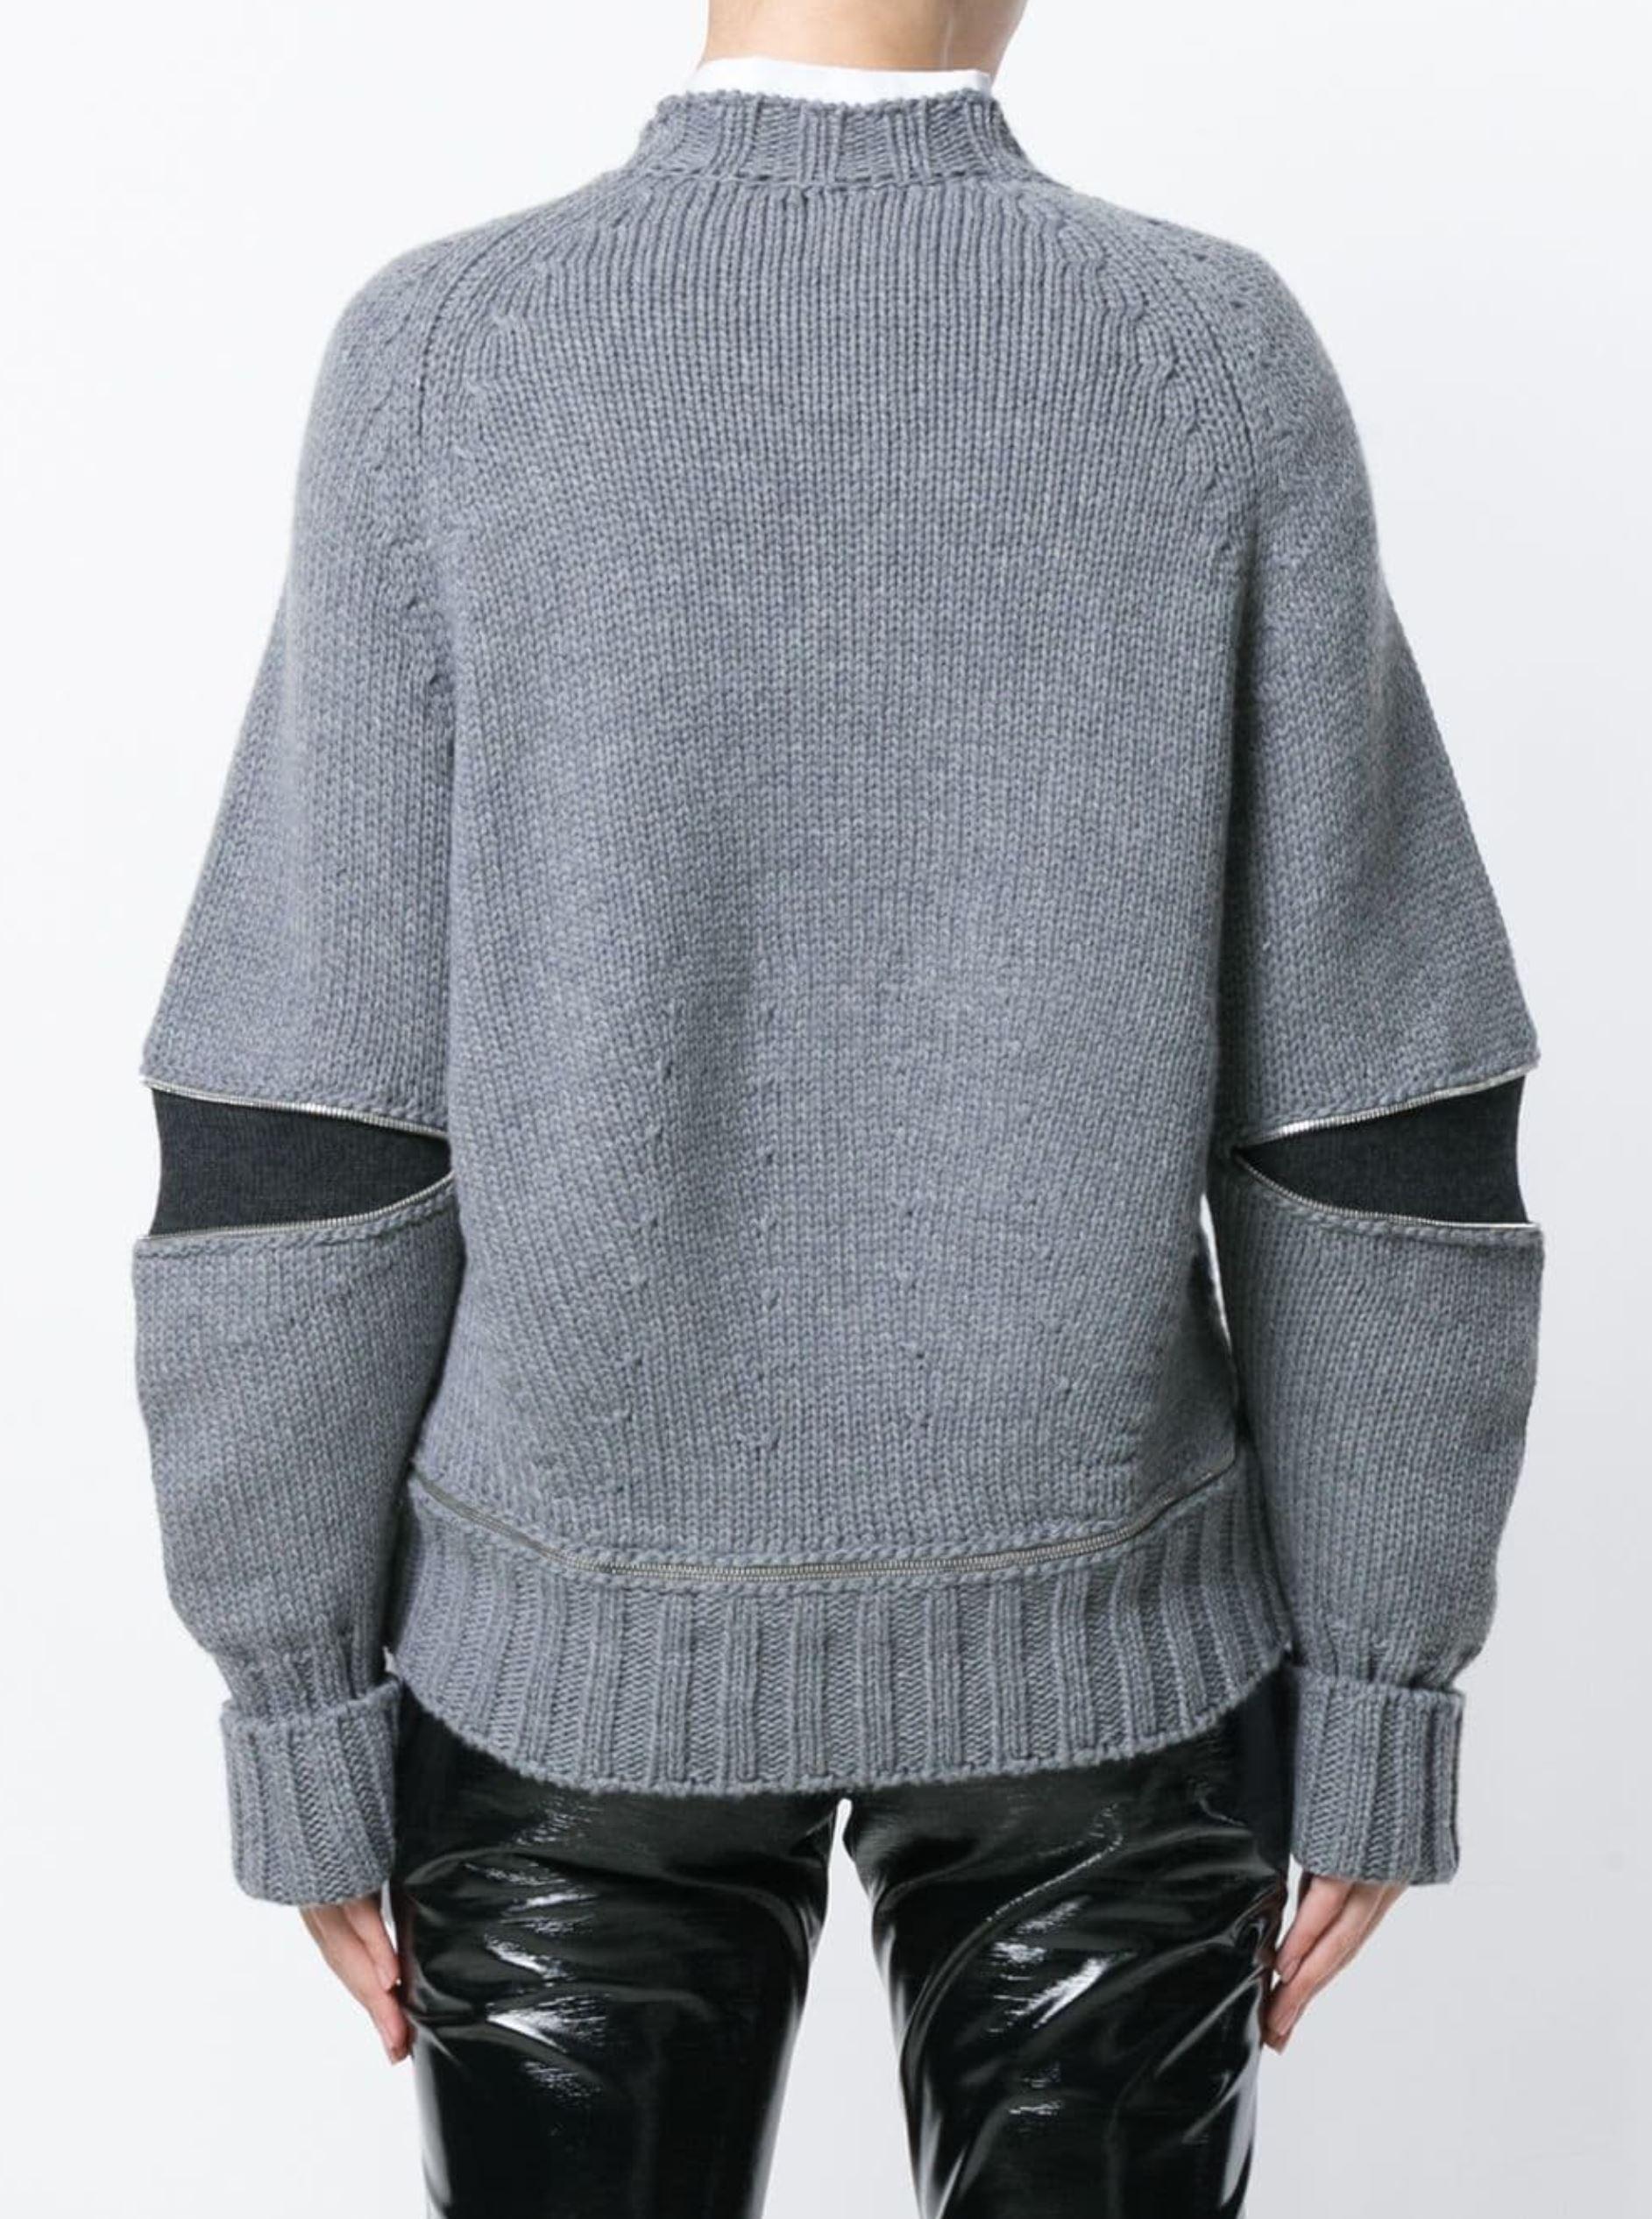 Women's New Laura Dern Big Little Lies Alexander McQueen Argyle Sweater Sz L $1295